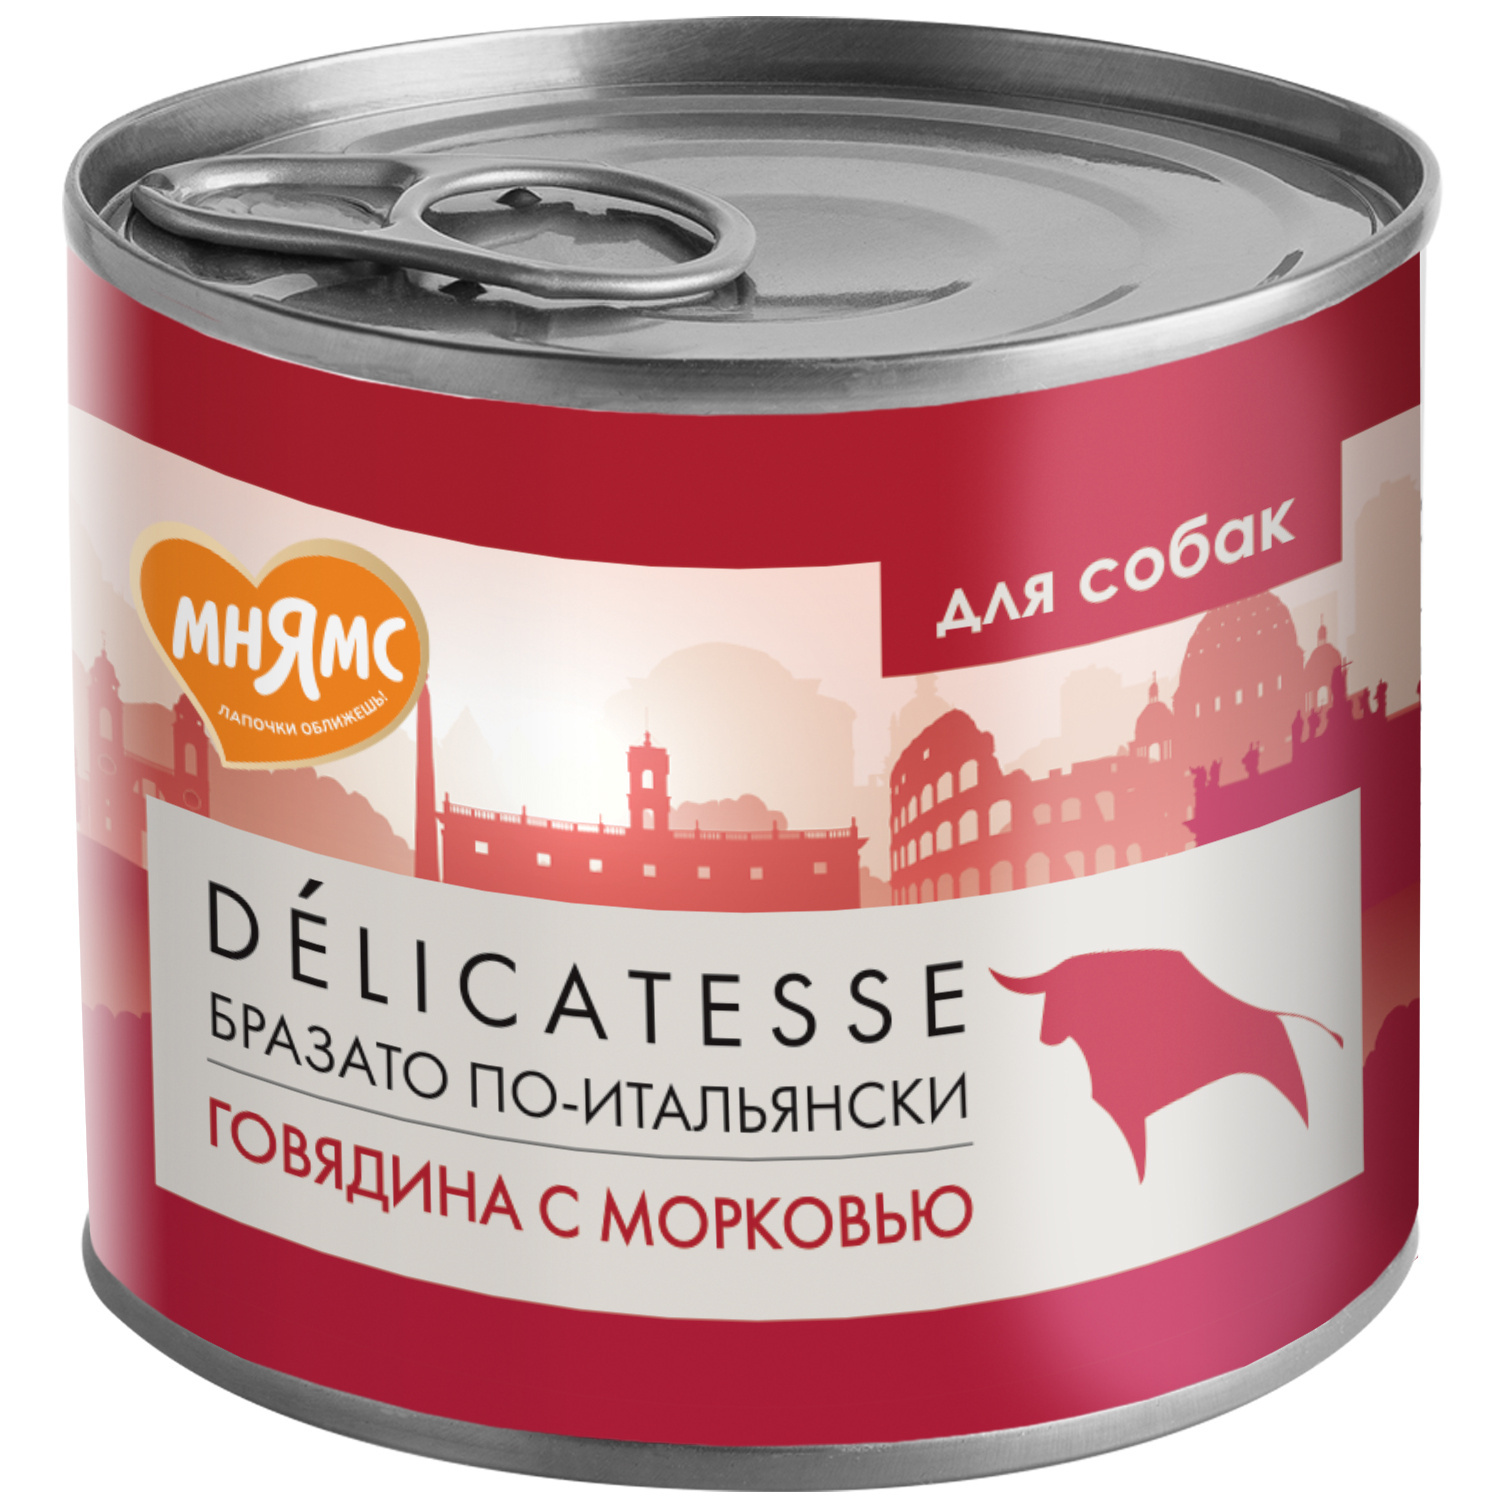 Мнямс Мнямс консервы Бразато по-итальянски для собак всех пород из говядины с морковью (200 г) мнямс мнямс консервы террин по версальски для собак всех пород из телятины с ветчиной 200 г